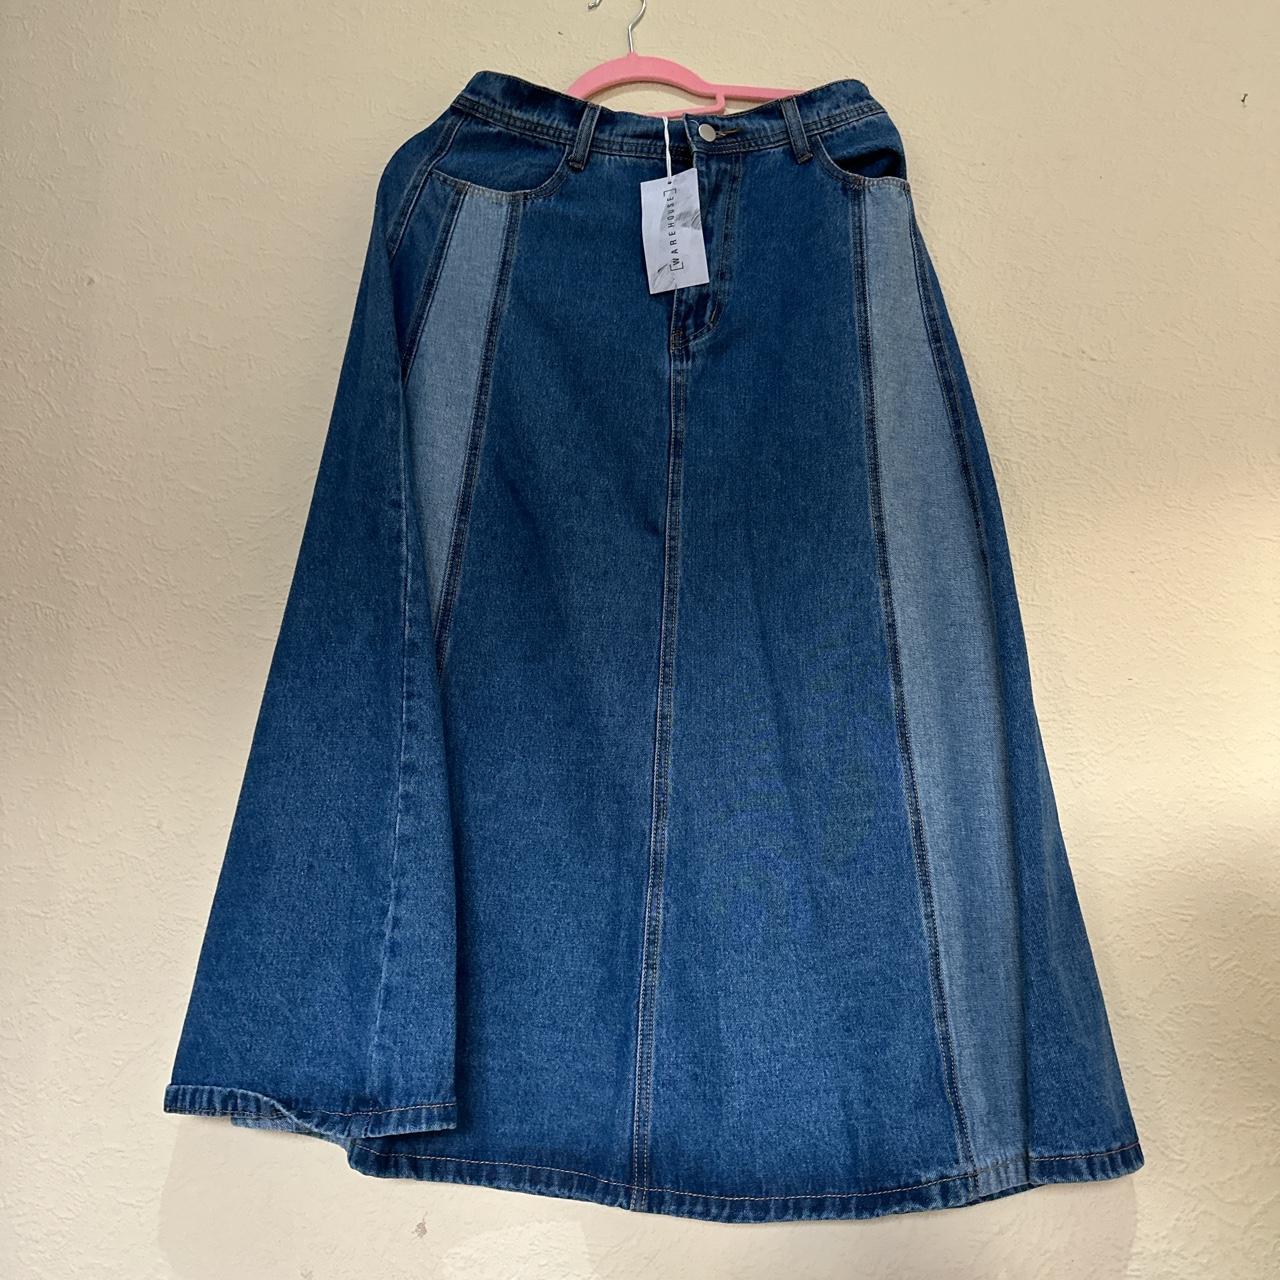 Women's Blue and Navy Skirt | Depop